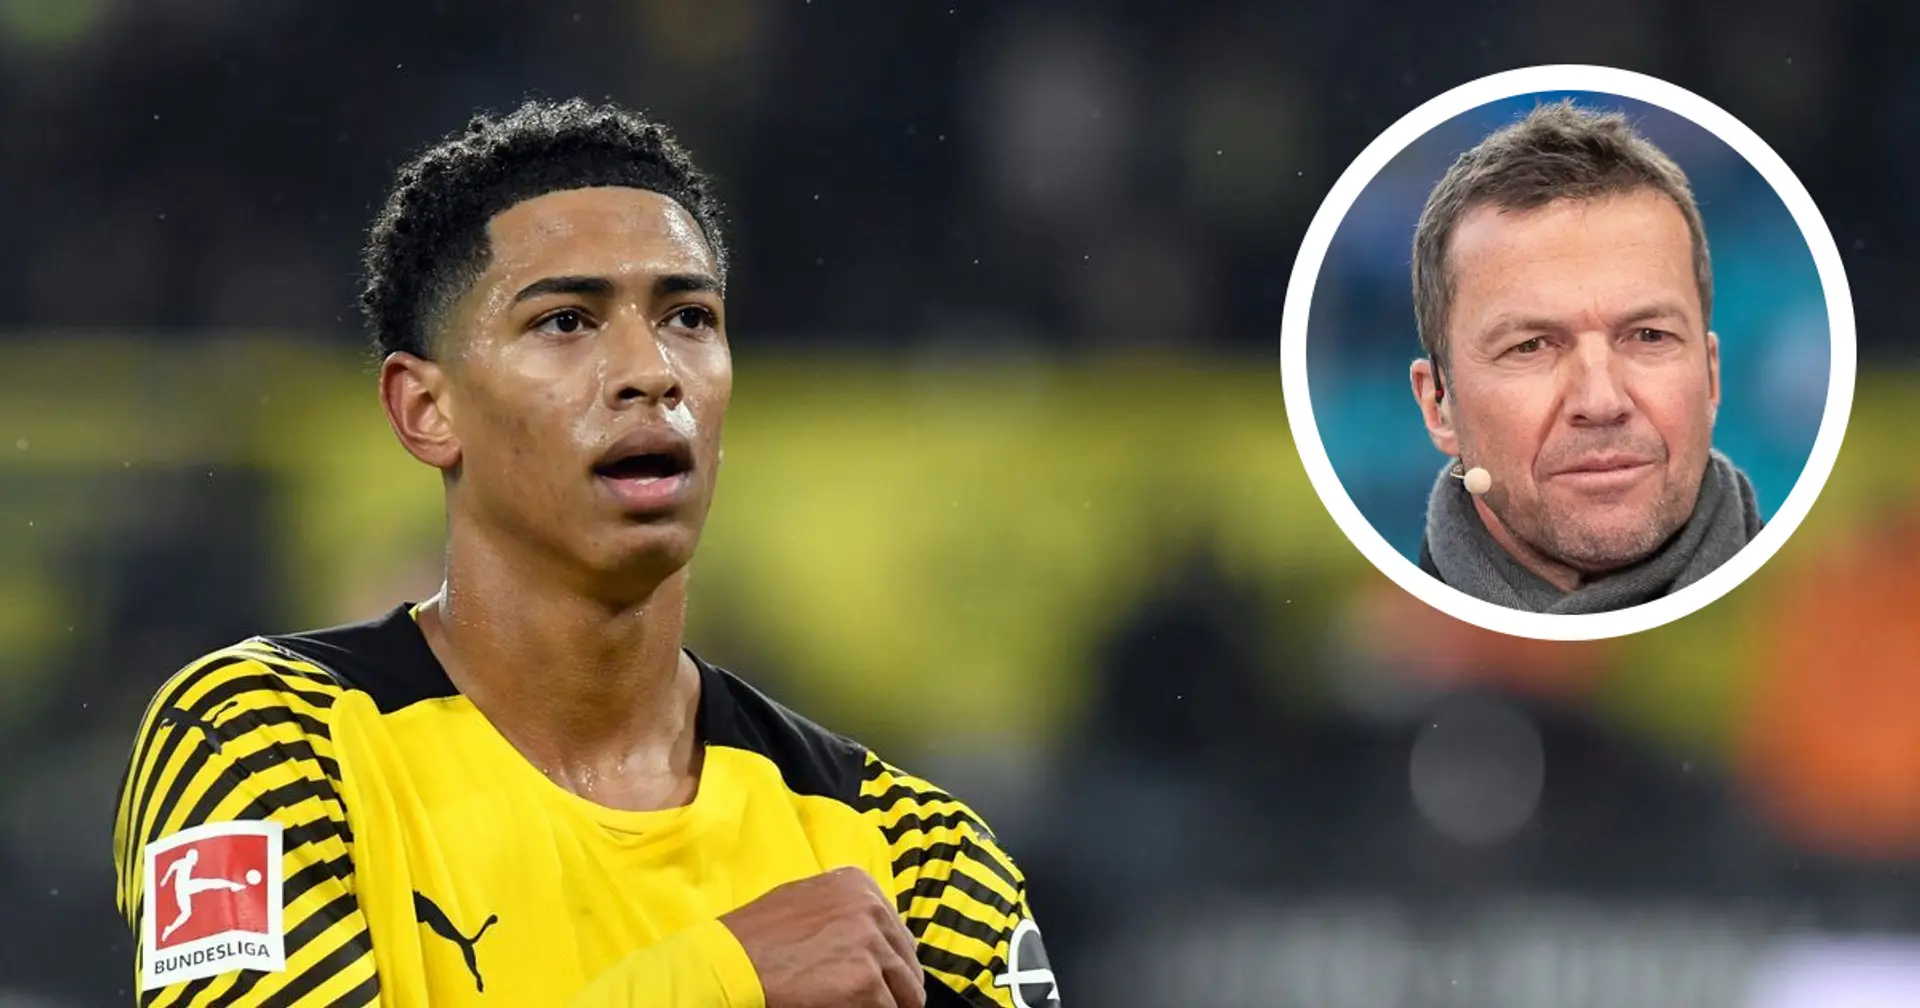 Lothar Matthaus defends Jude Bellingham after Dortmund vs Bayern referee scandal